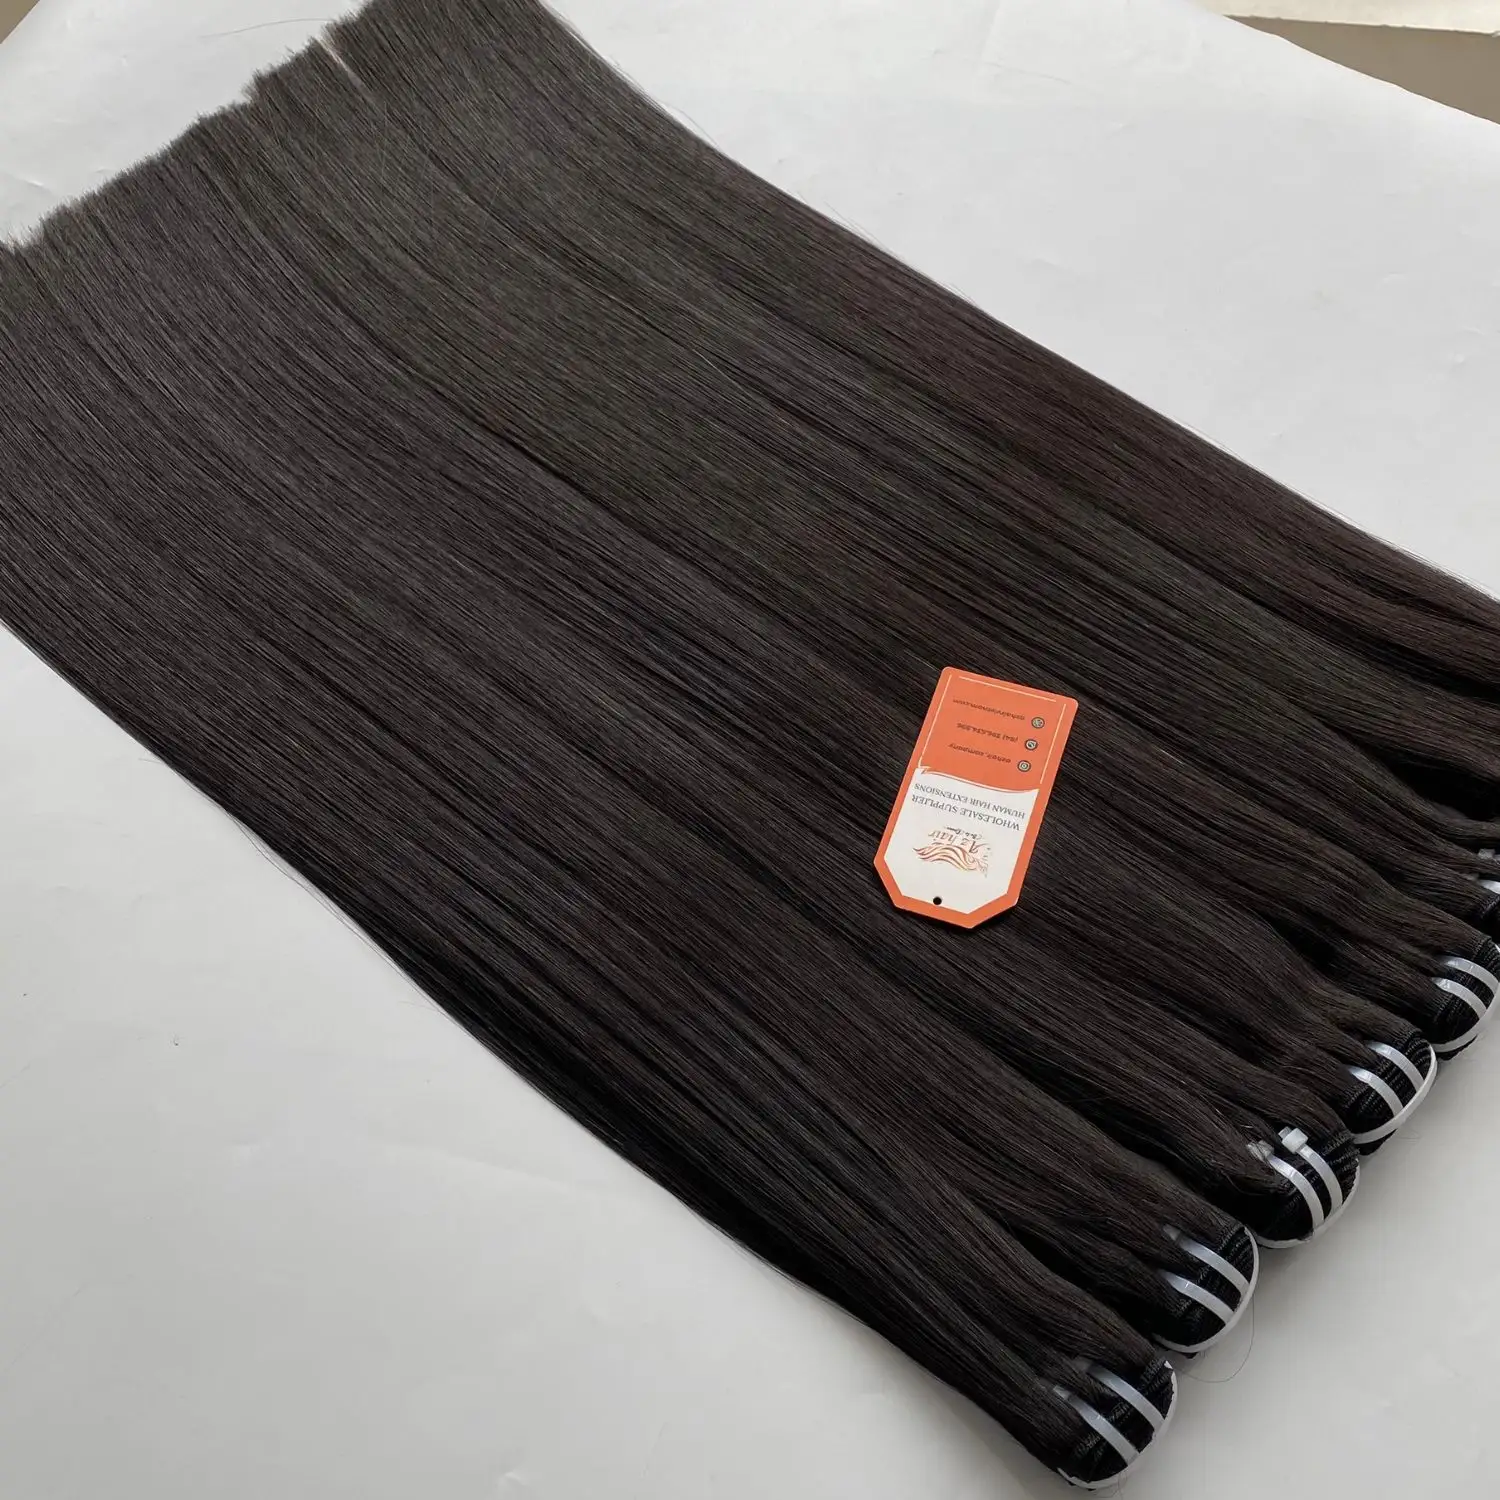 Nero naturale di alta qualità tessuto grezzo non trasformato in osso liscio veri capelli umani all'ingrosso vietnamita fornitore